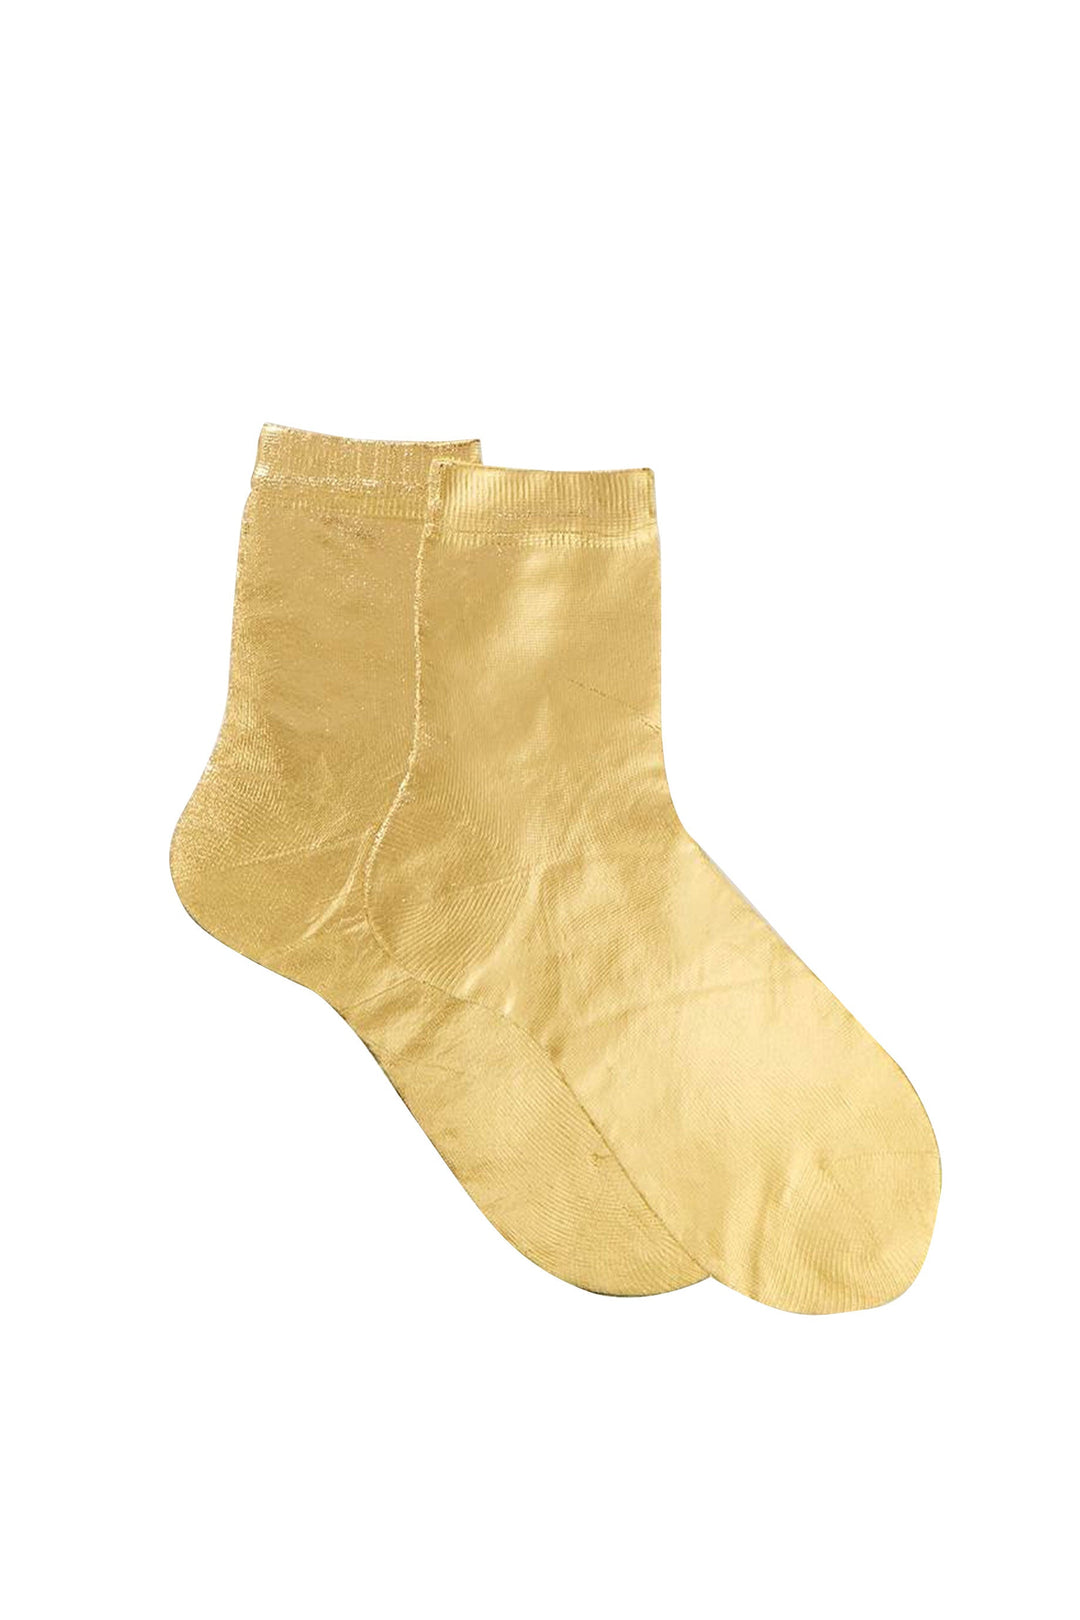 Maria La Rosa Ribbed Sock - Gold